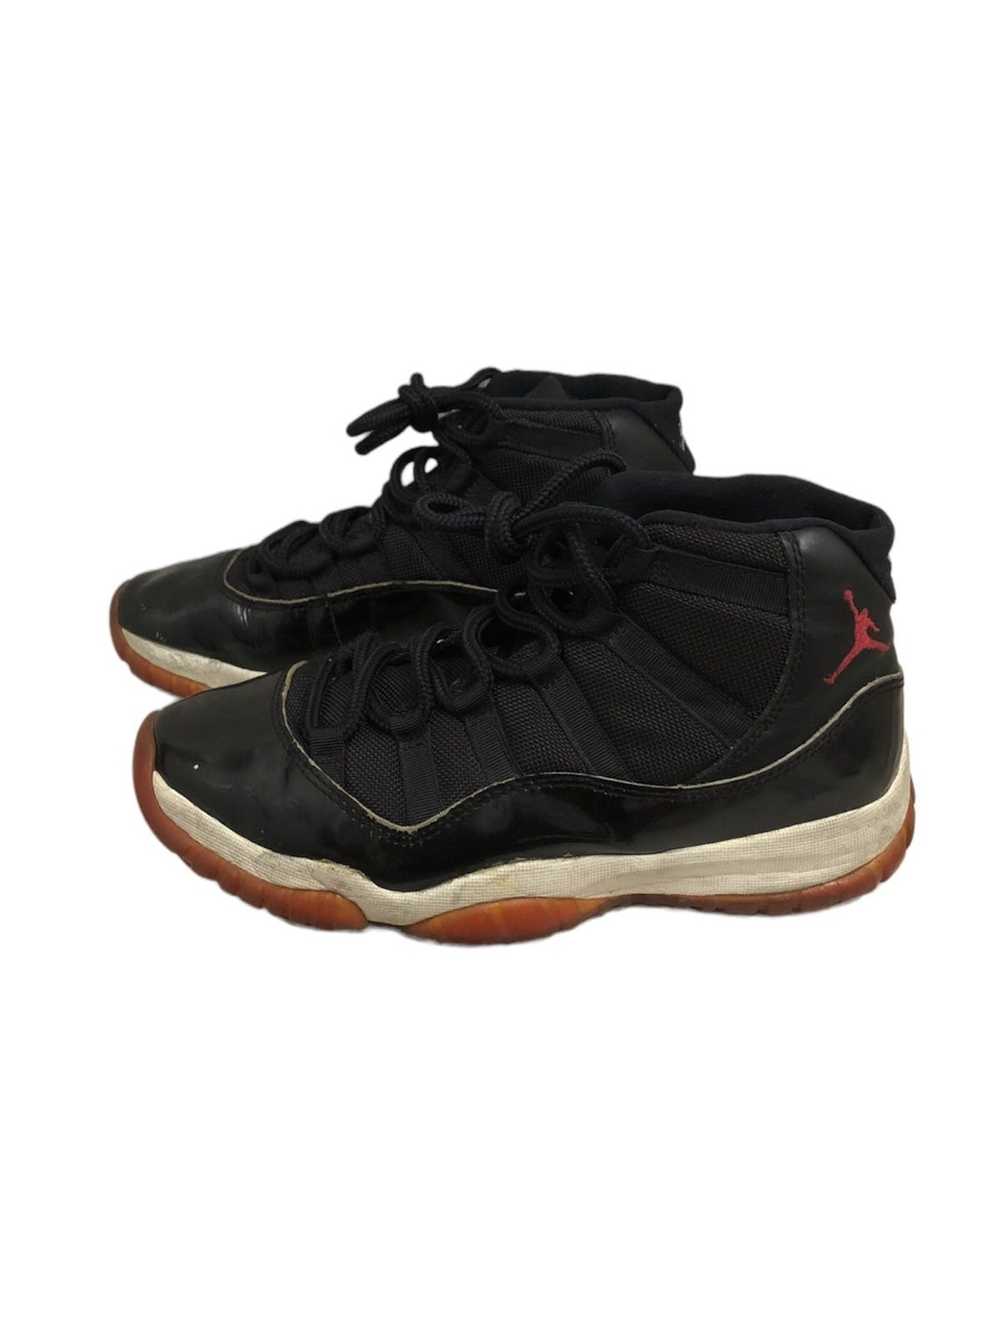 Jordan Brand × Nike OG 1995 Air Jordan 11 - image 1